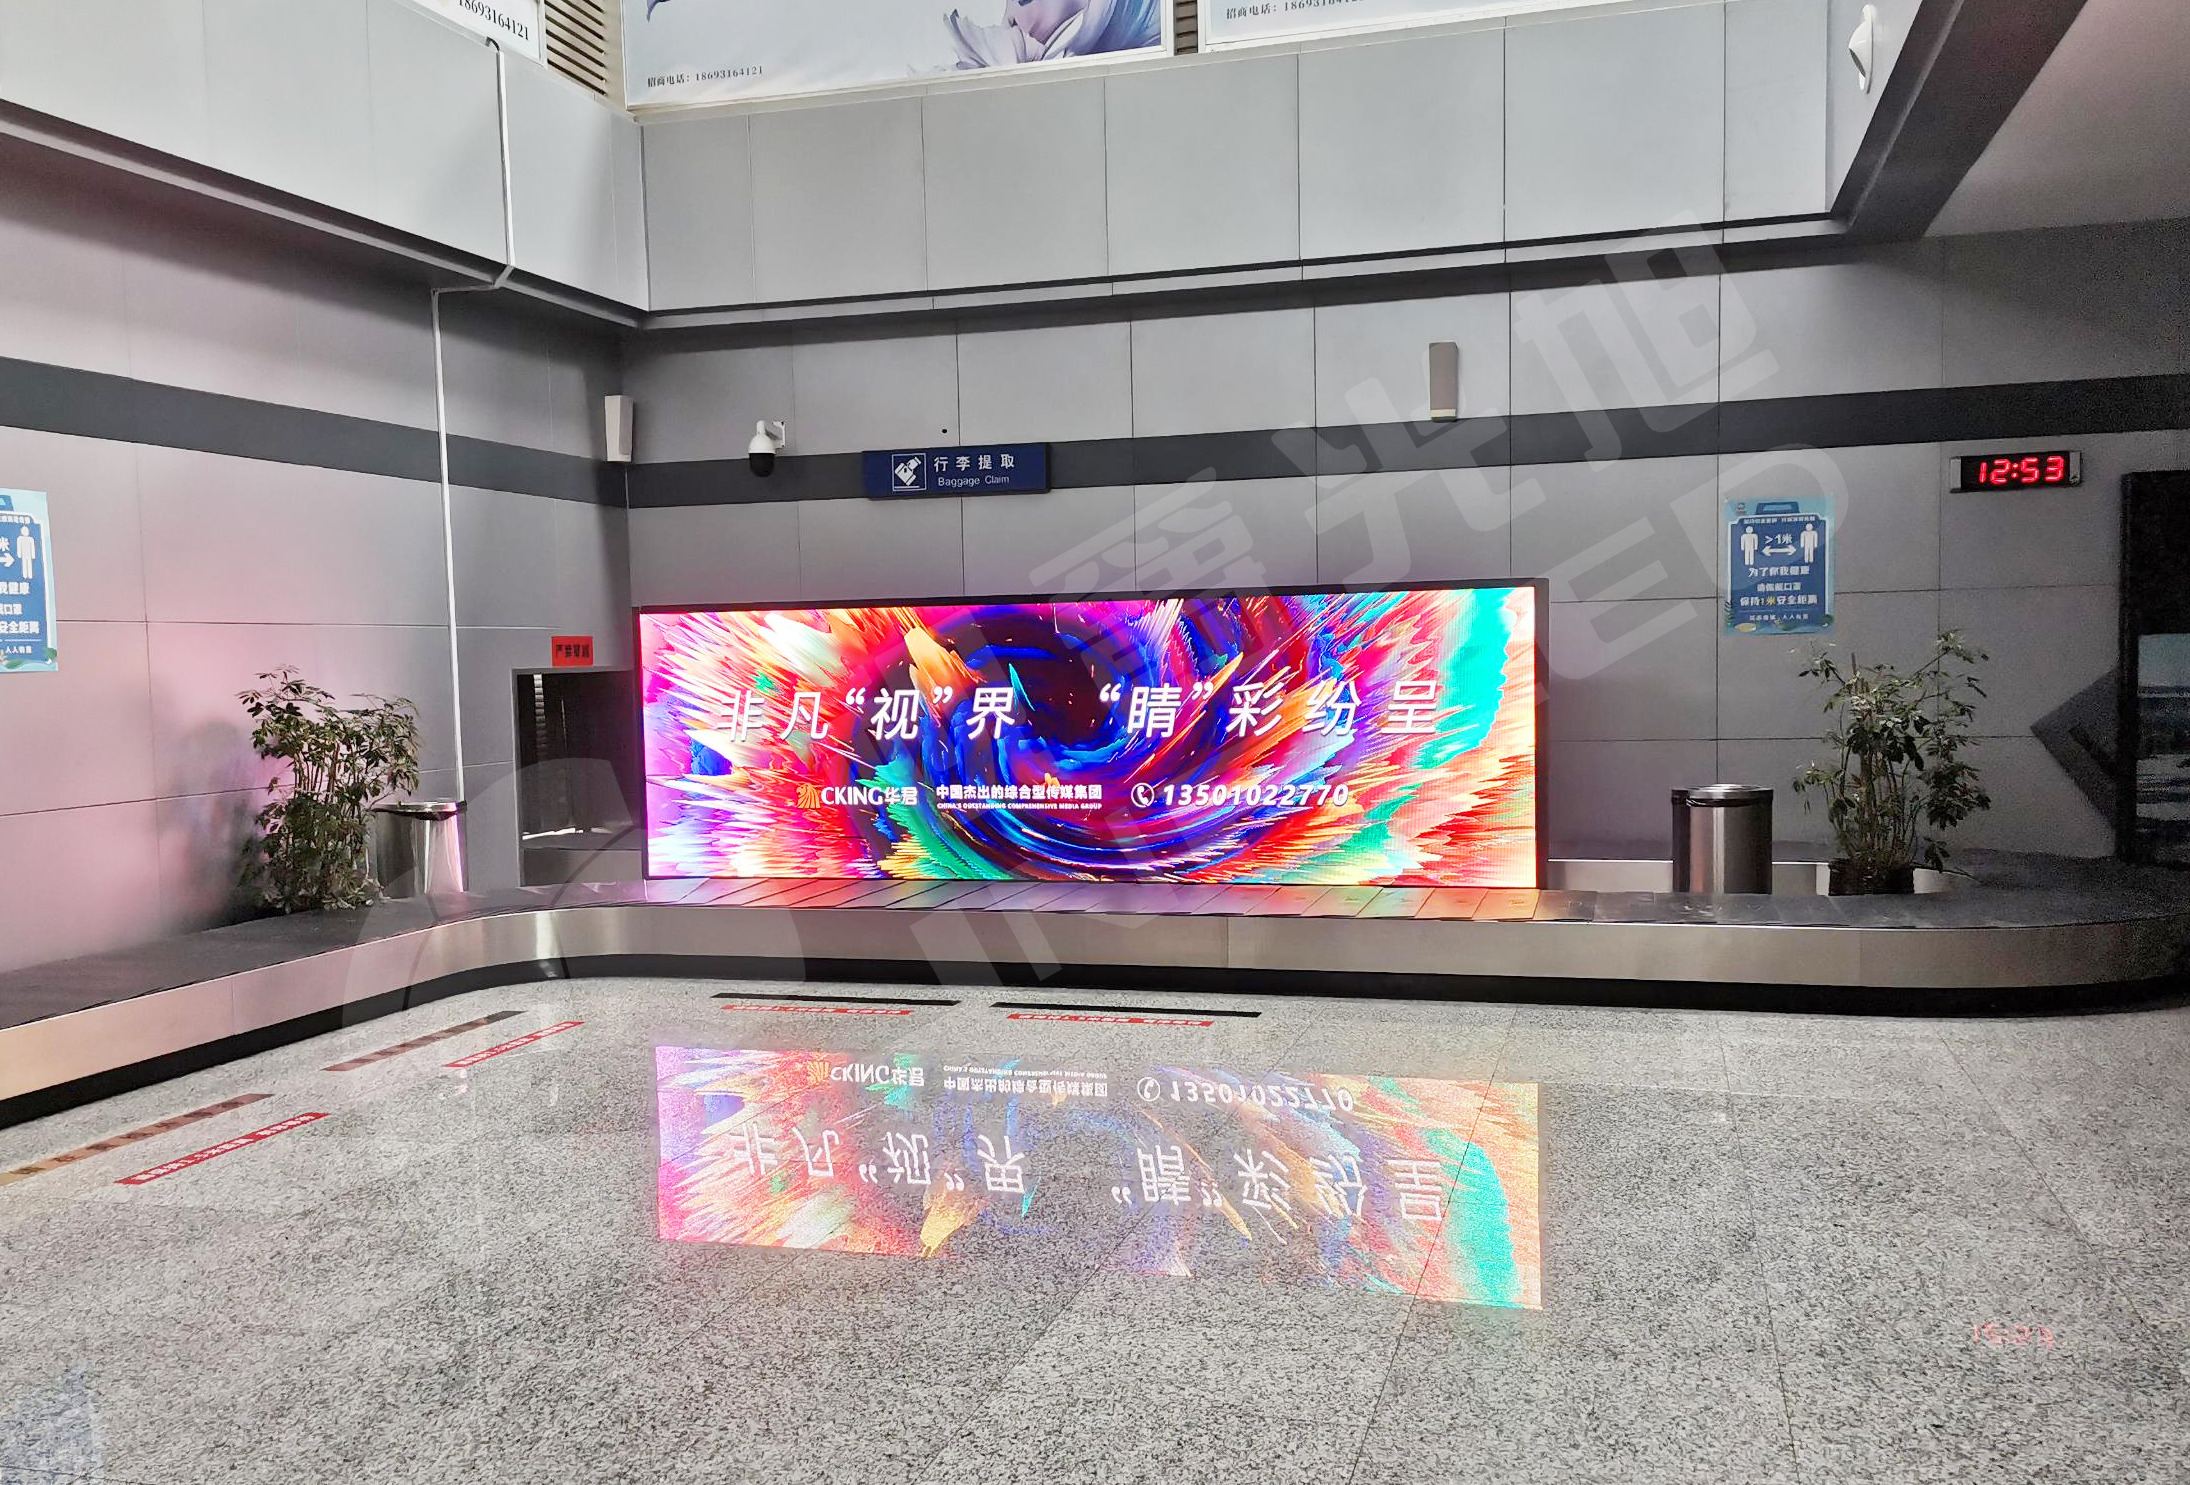 视爵光旭高清LED显示屏为张掖甘州机场打造行李岛信息广告屏